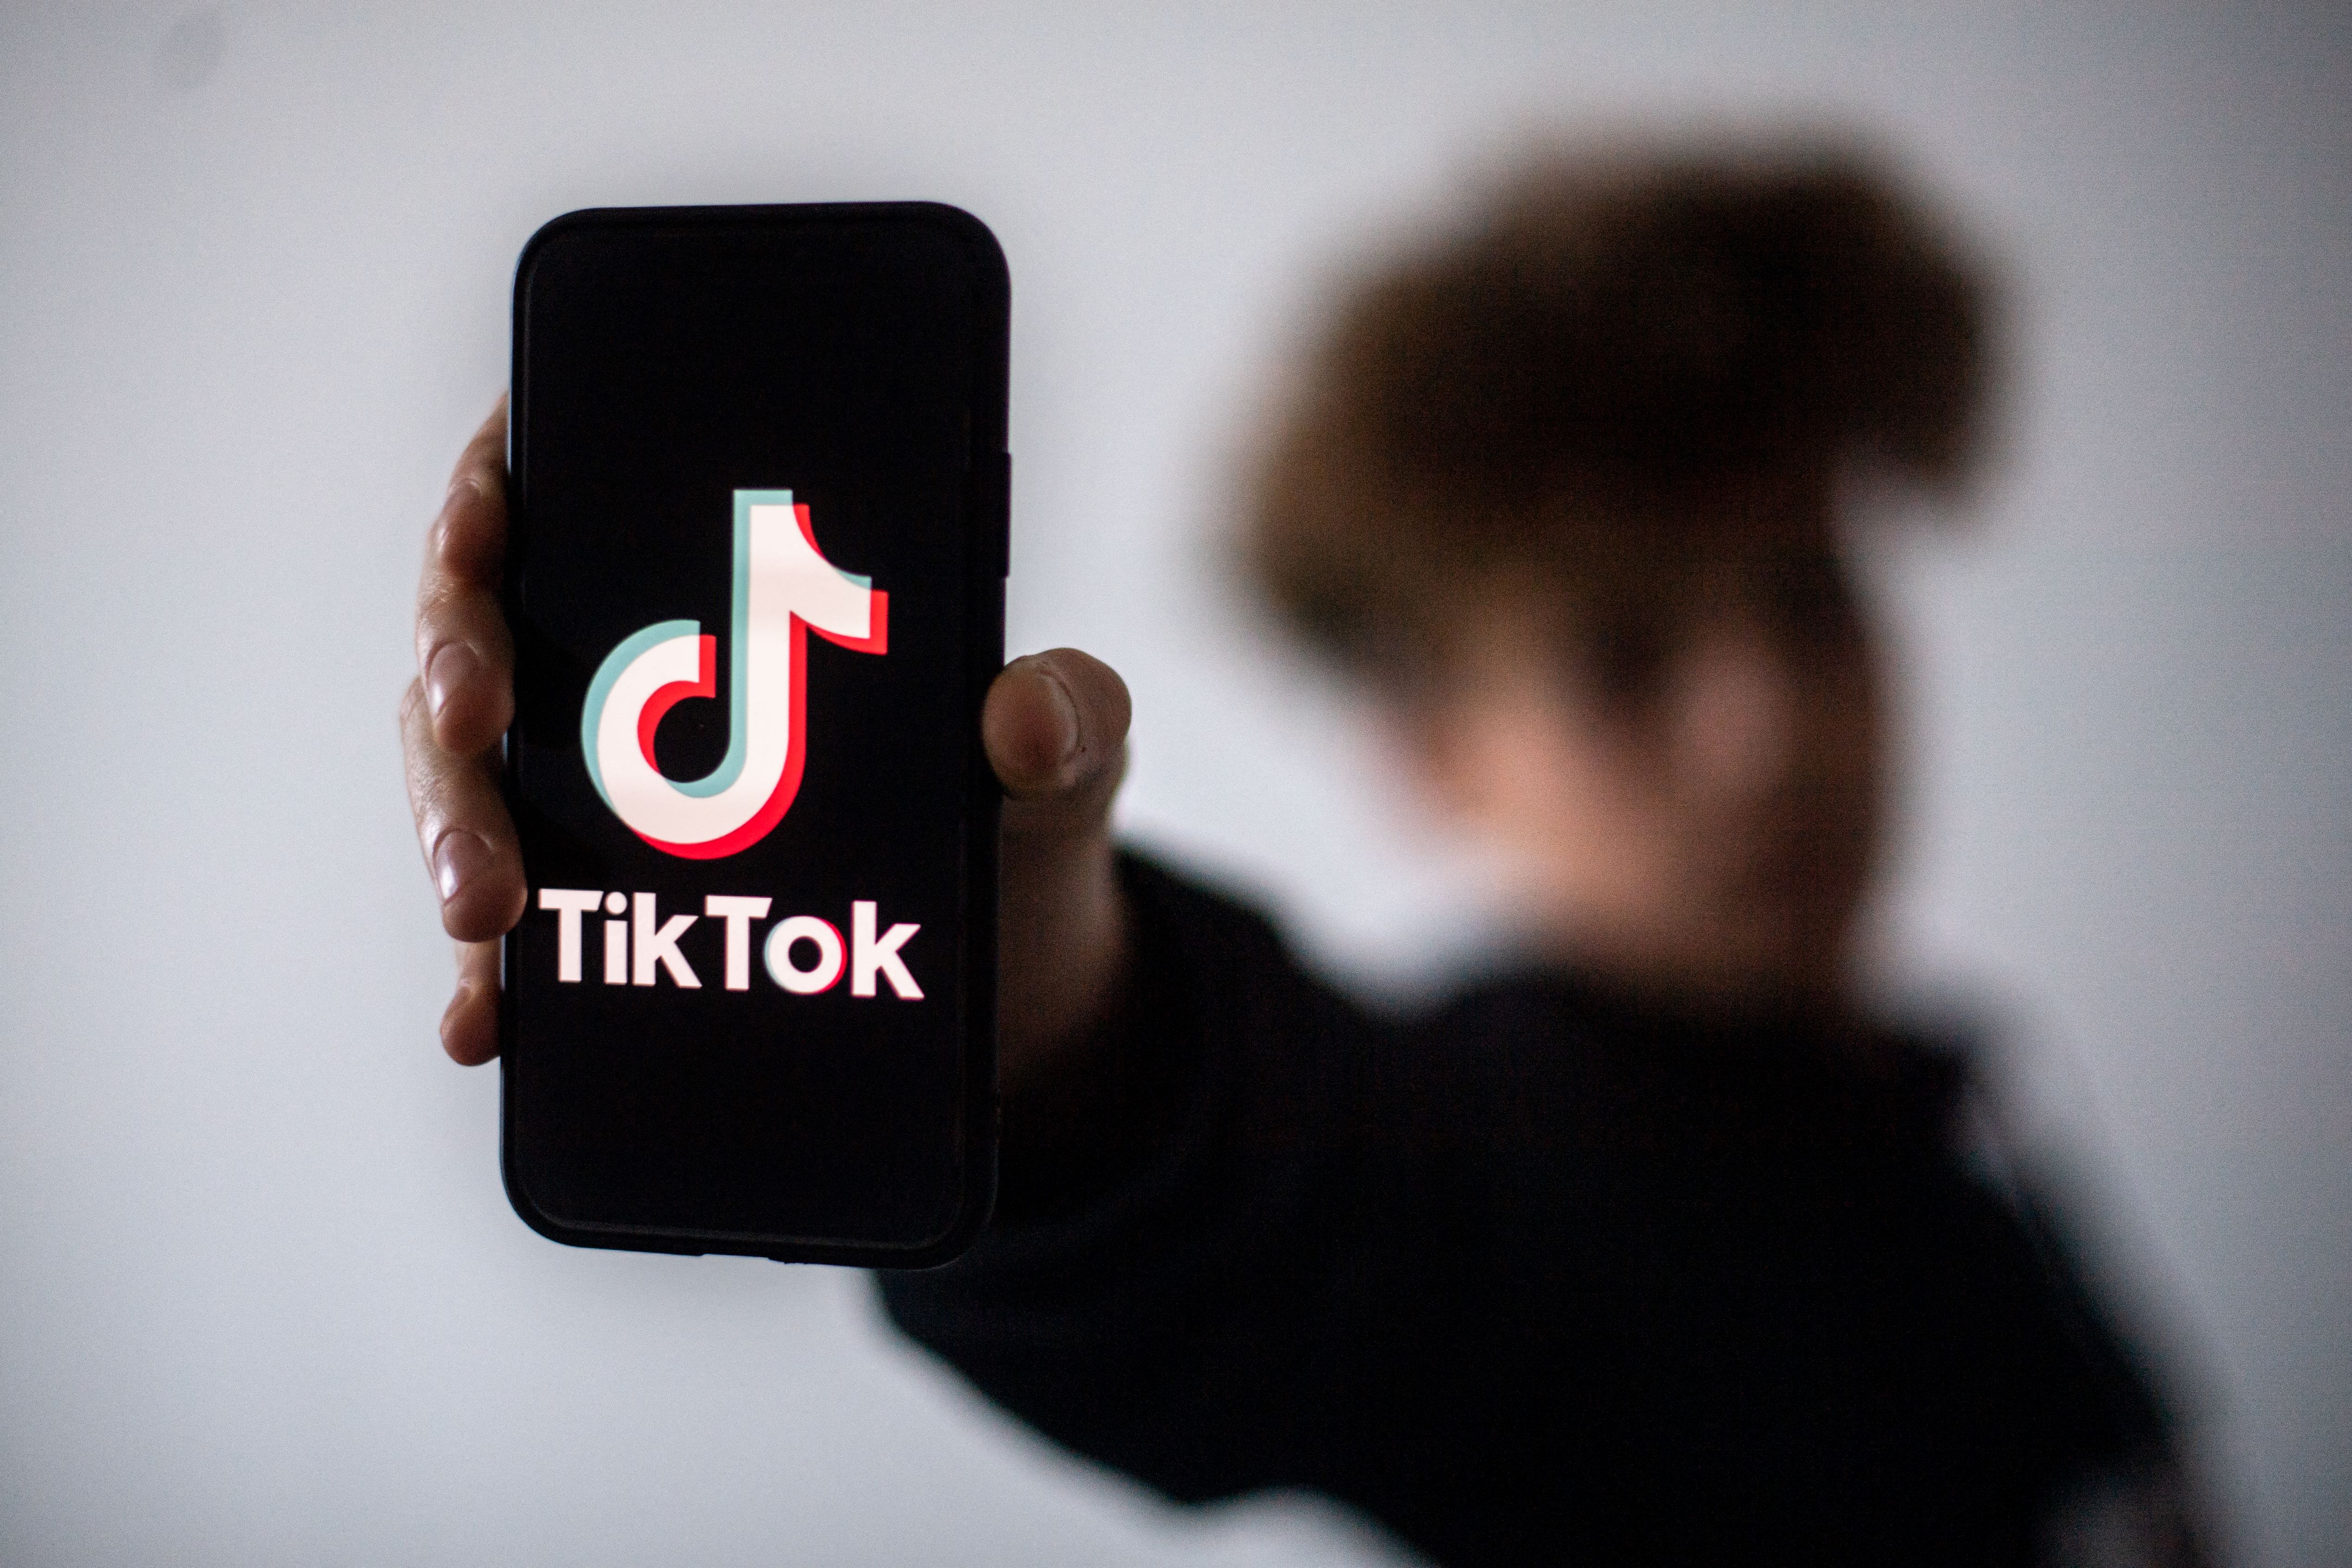 Un adolescent présente un smartphone avec le logo du réseau social chinois Tik Tok, le 21 janvier 2021 à Nantes, dans l'ouest de la France (Loïc VENANCE / AFP)